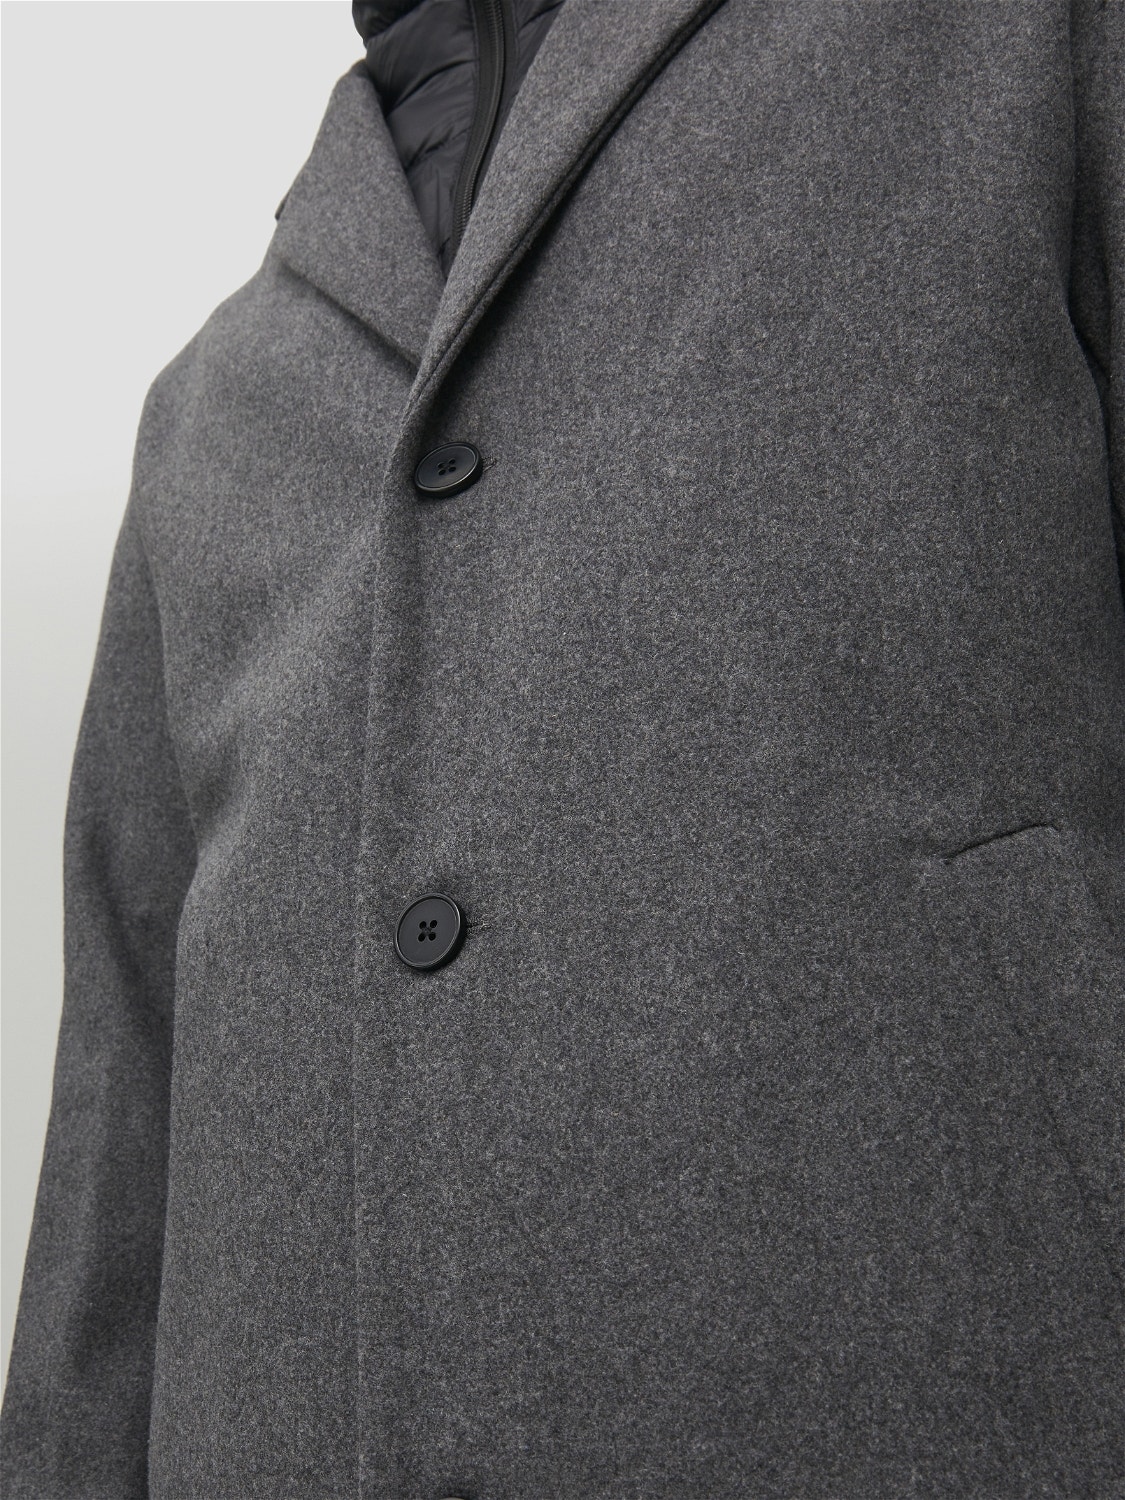 Coat with 20% discount! | Jack & Jones®